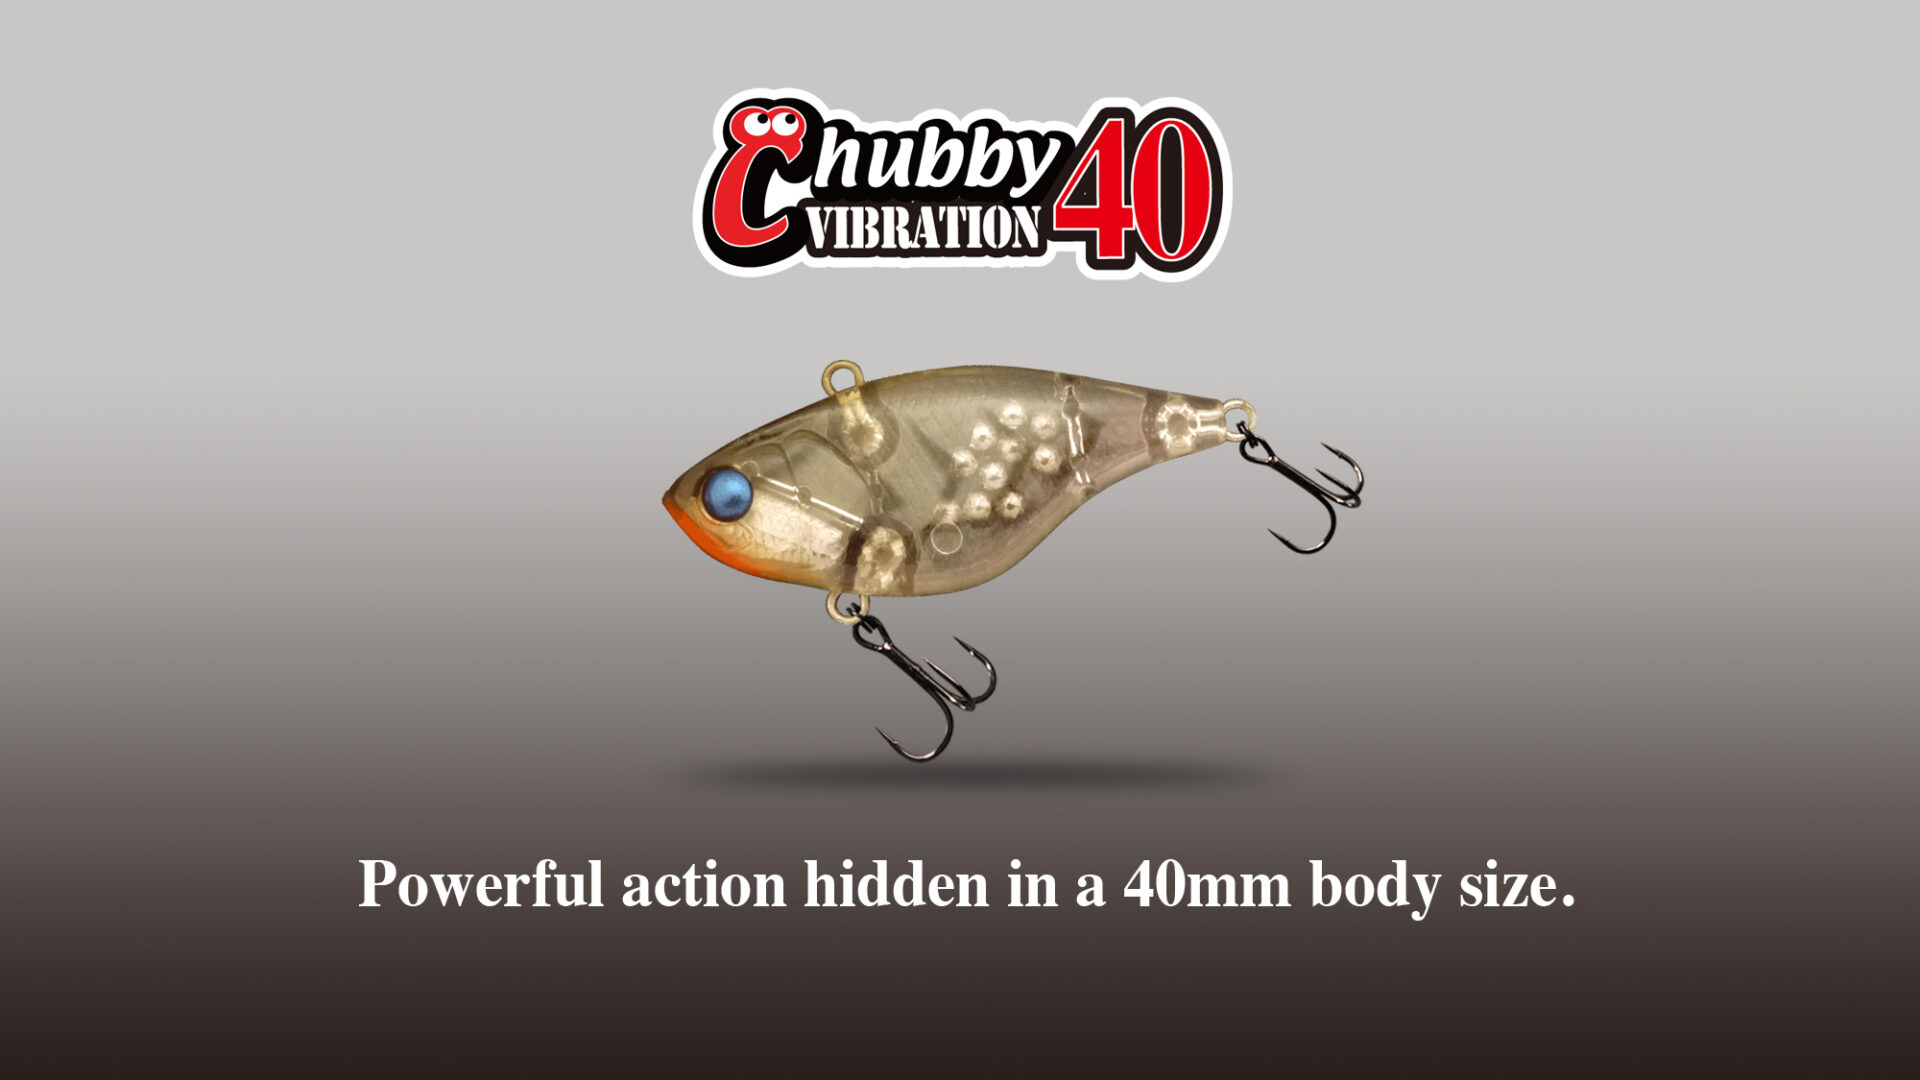  Chubby VIBRATION 40